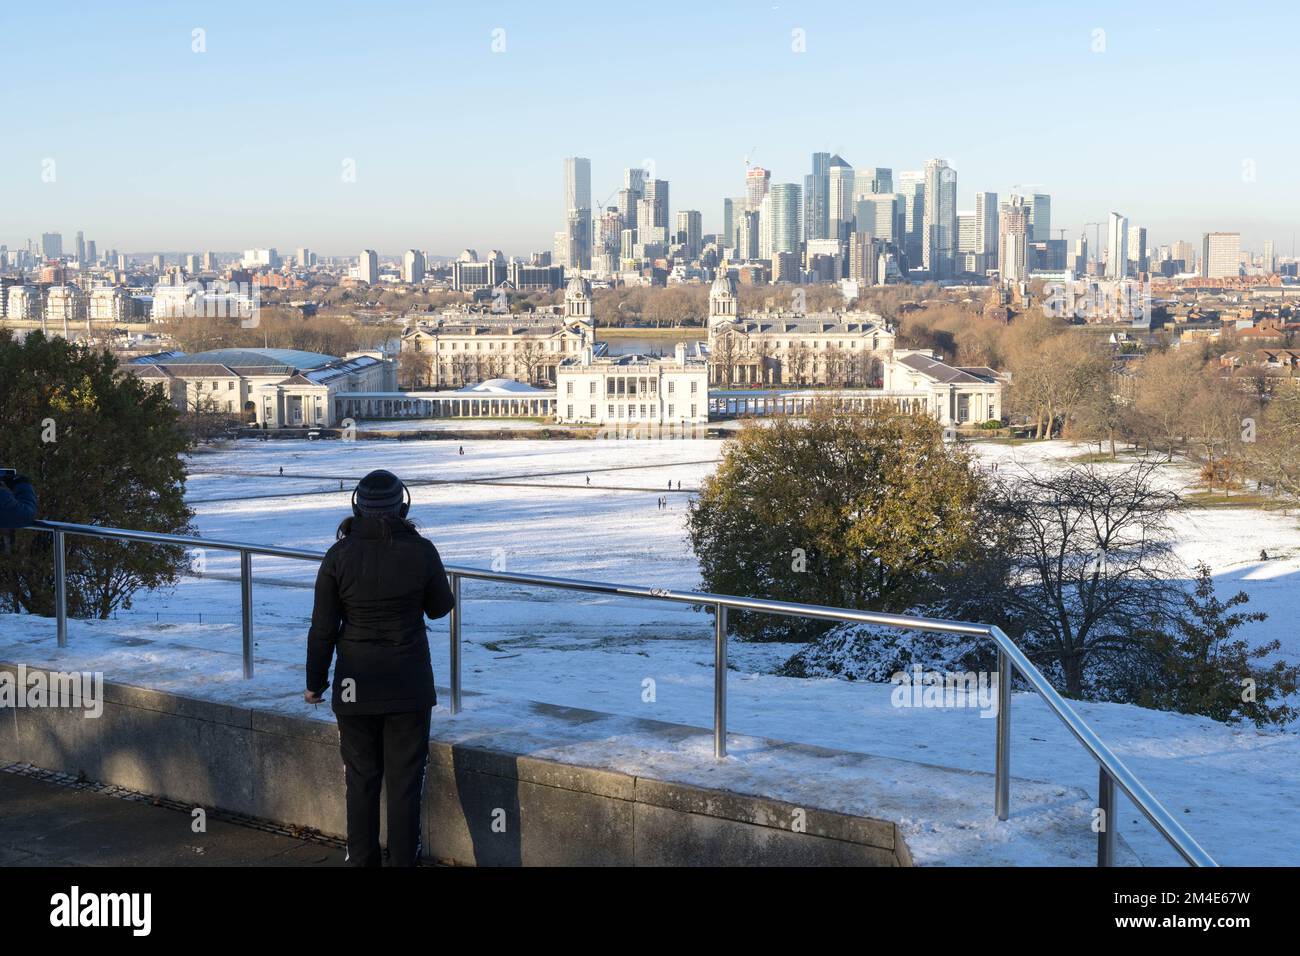 Il pubblico generale gode di un po' di sole invernale in un gelo profondo sotto la neve artica a Greenwich, nel sud-est di Londra, Inghilterra Foto Stock